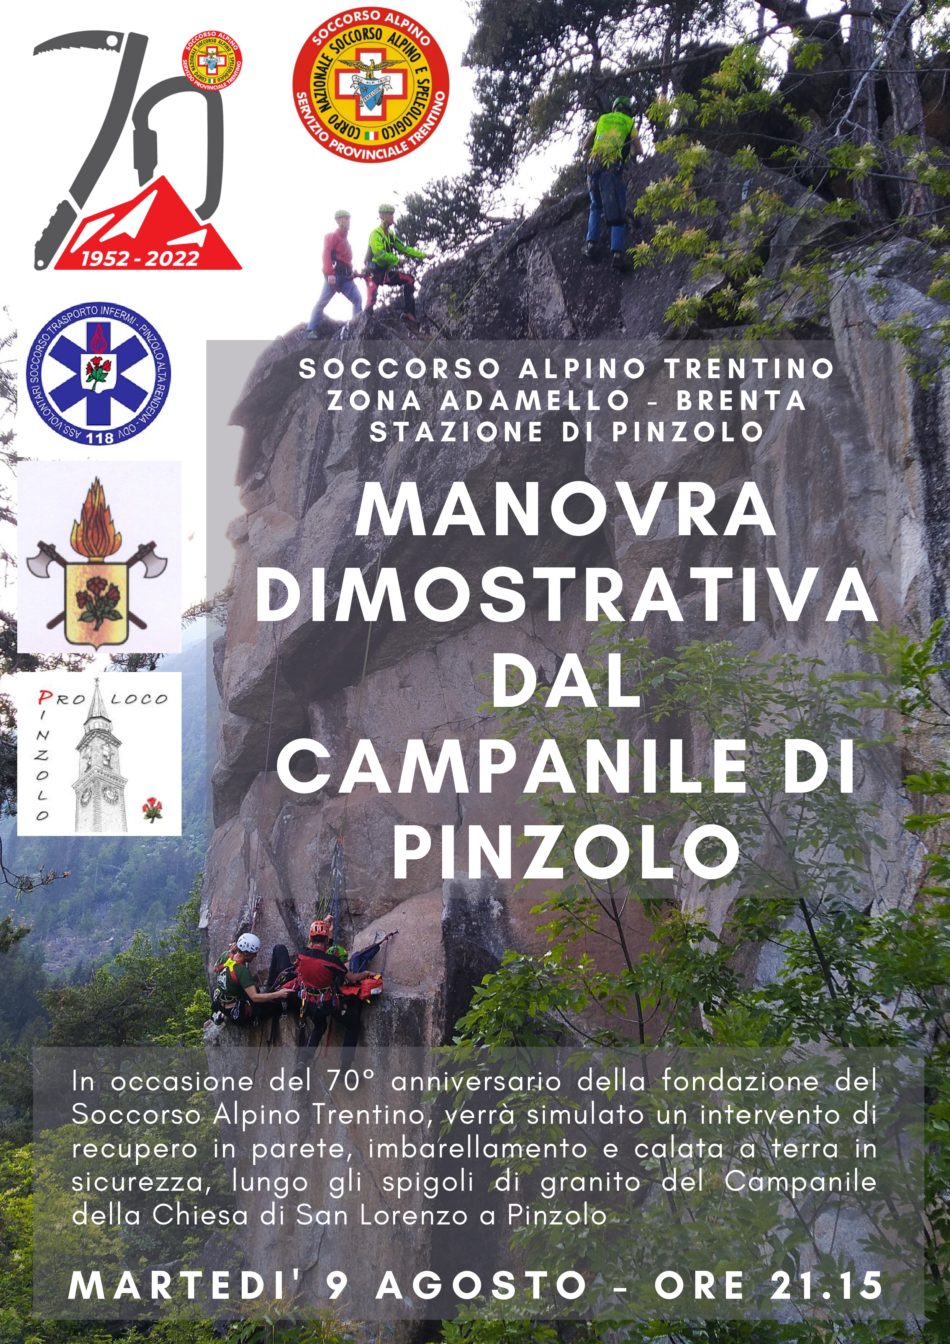 9 agosto: Manovra dimostrativa del Soccorso alpino dal campanile di Pinzolo